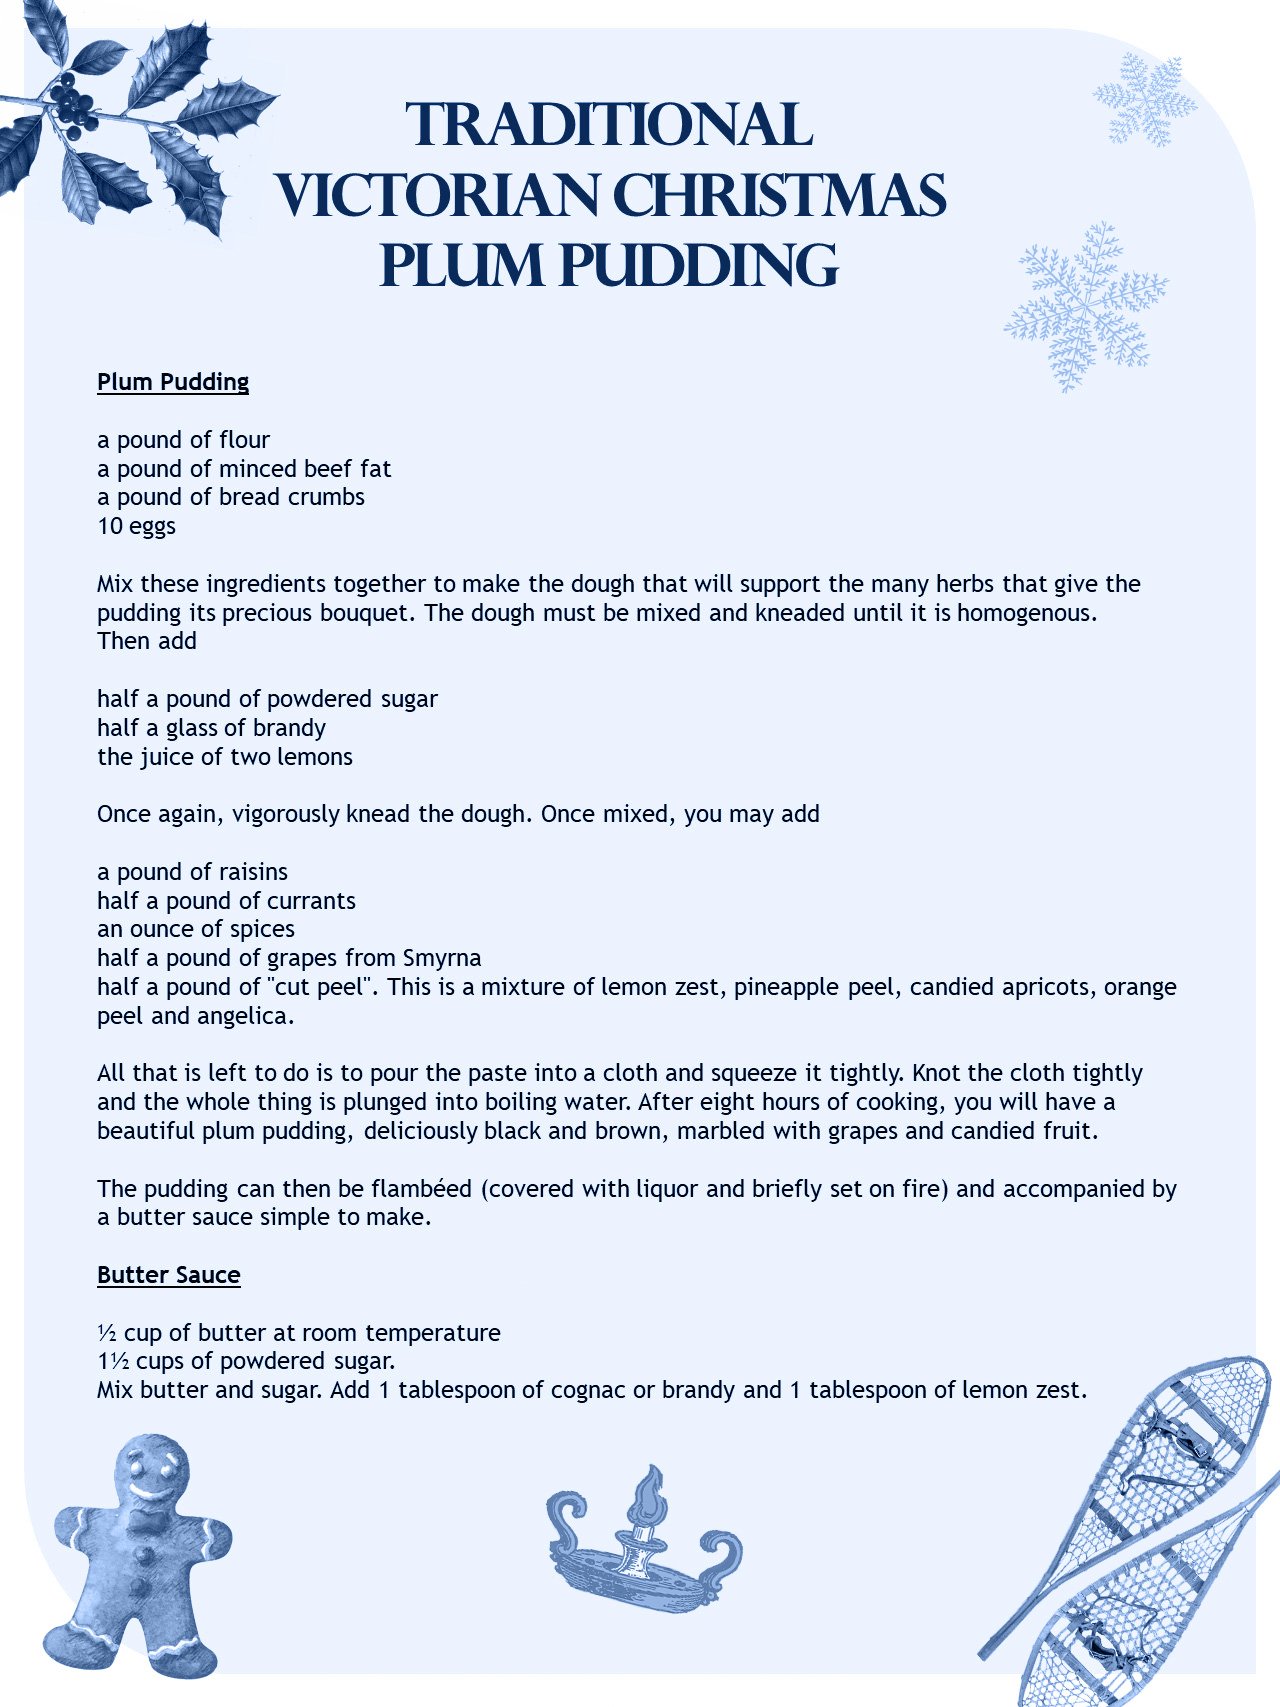 Plum pudding recipe